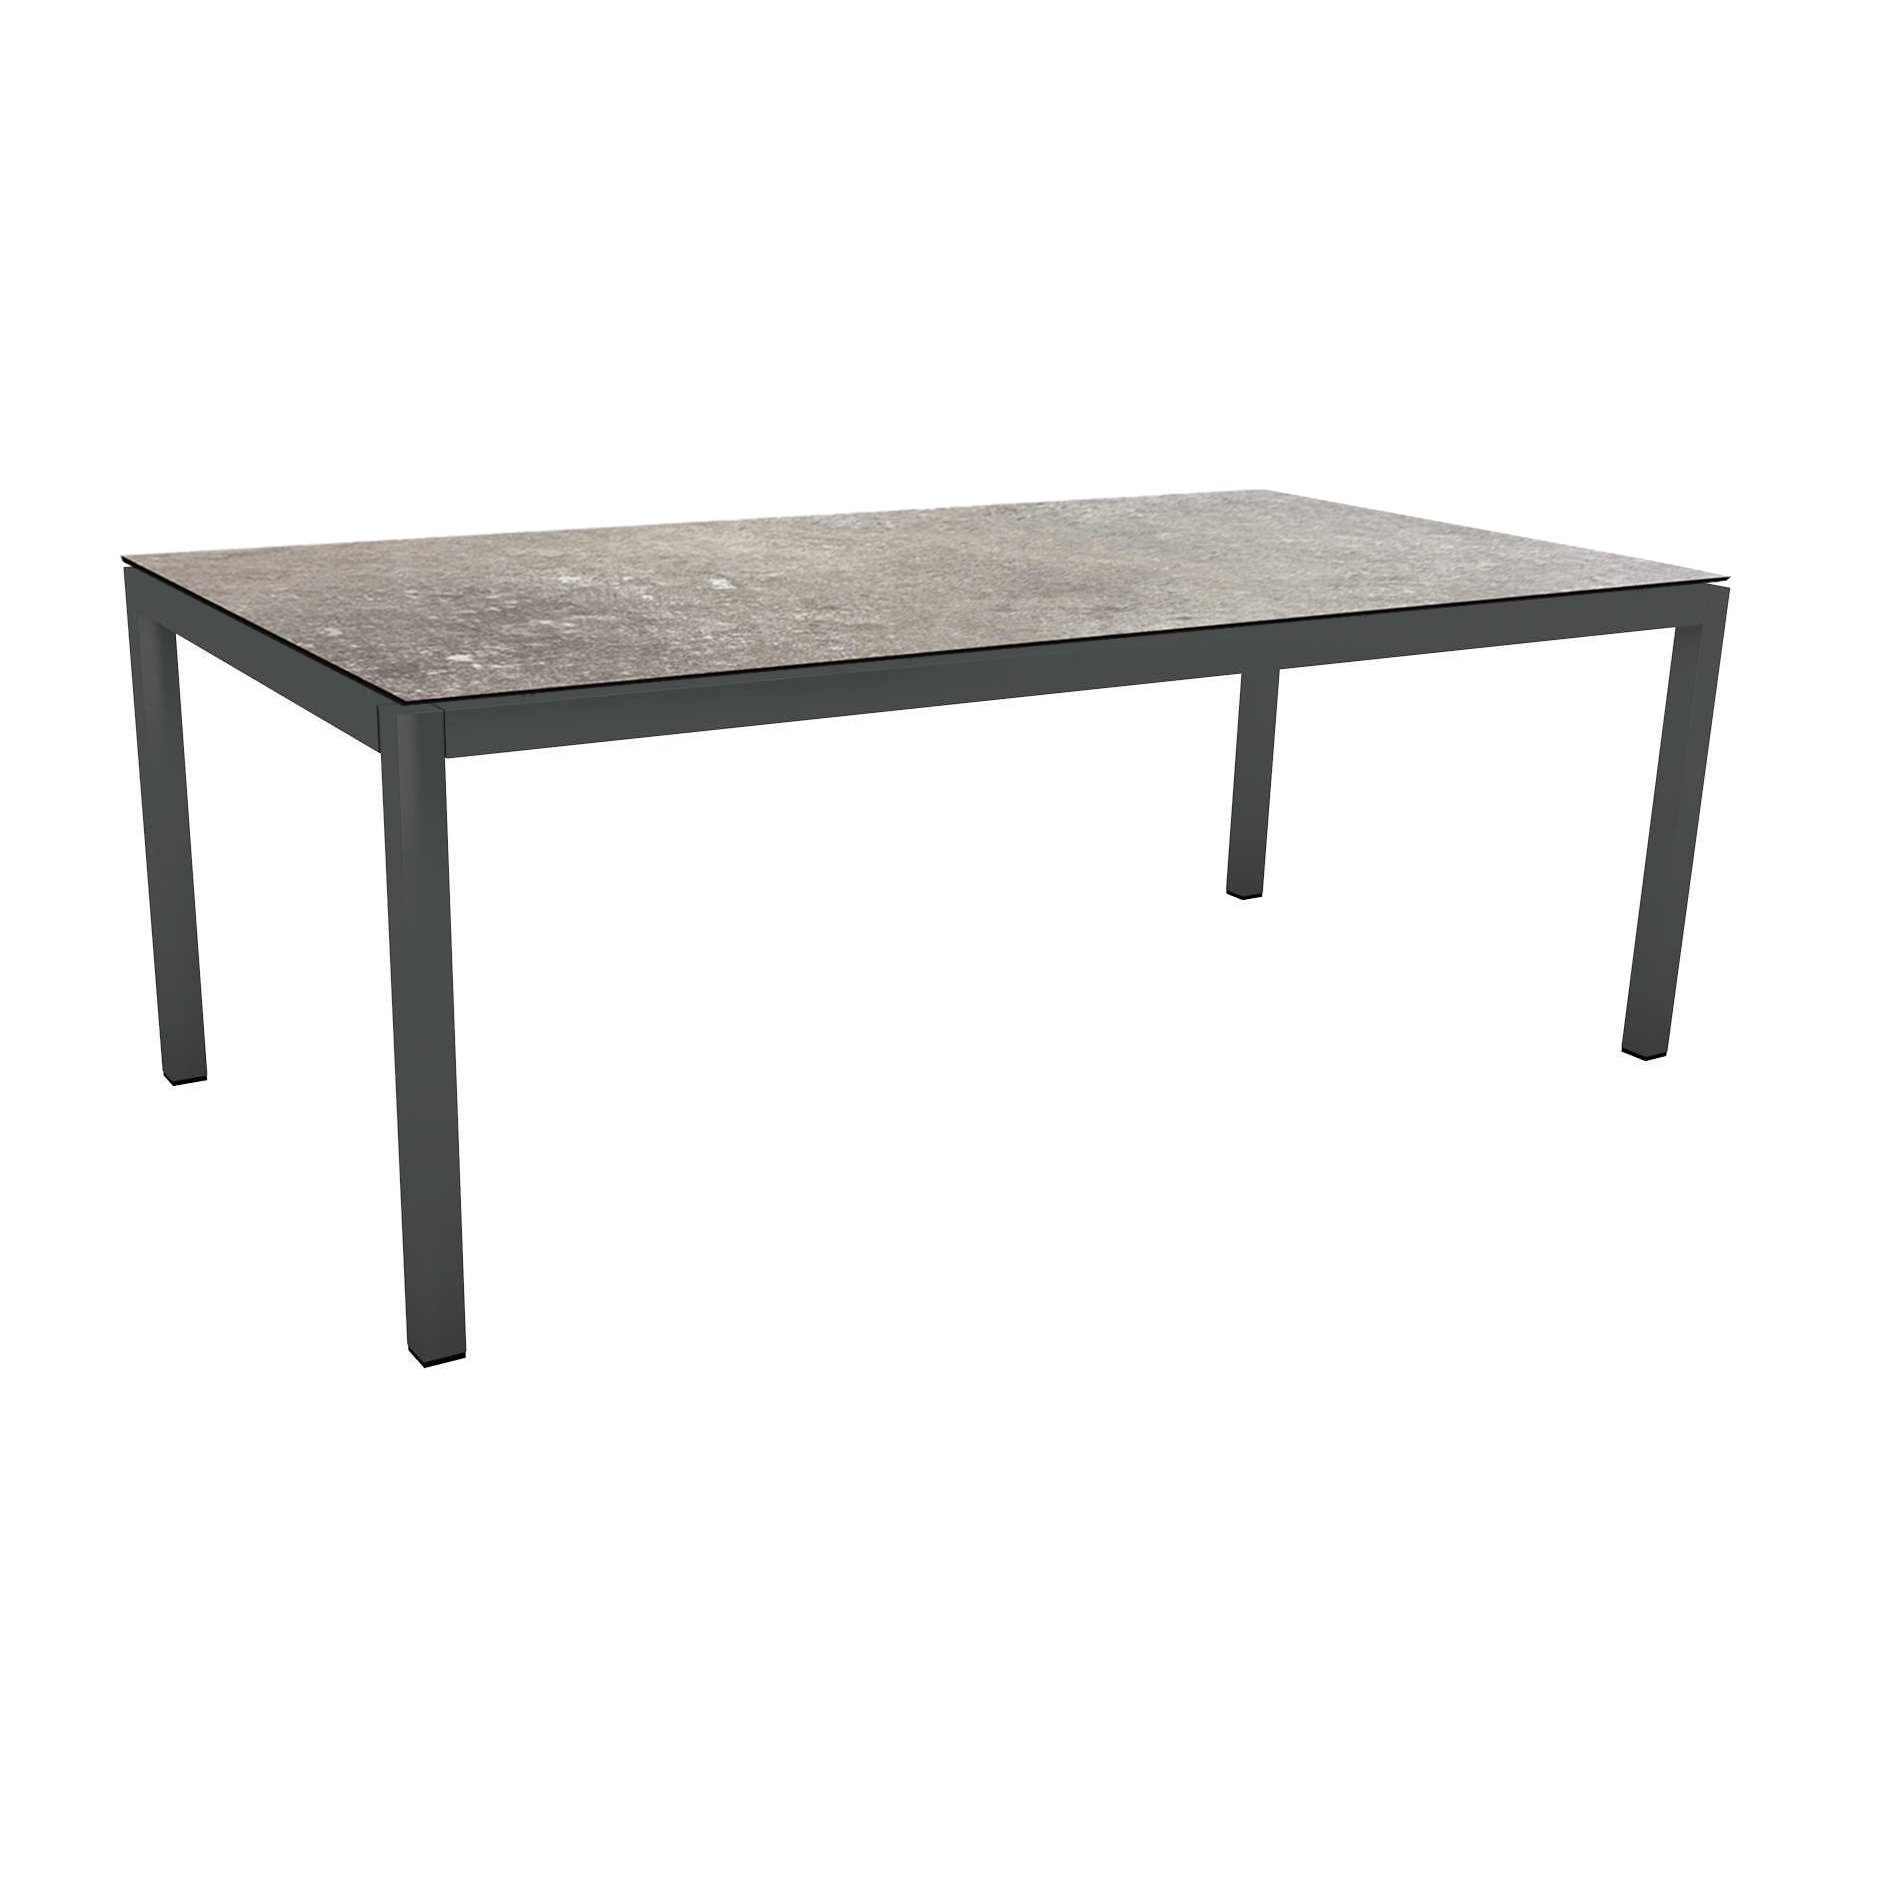 Stern Tischsystem Gartentisch, Gestell Aluminium anthrazit, Tischplatte HPL Vintage stone, Maße: 200x100 cm